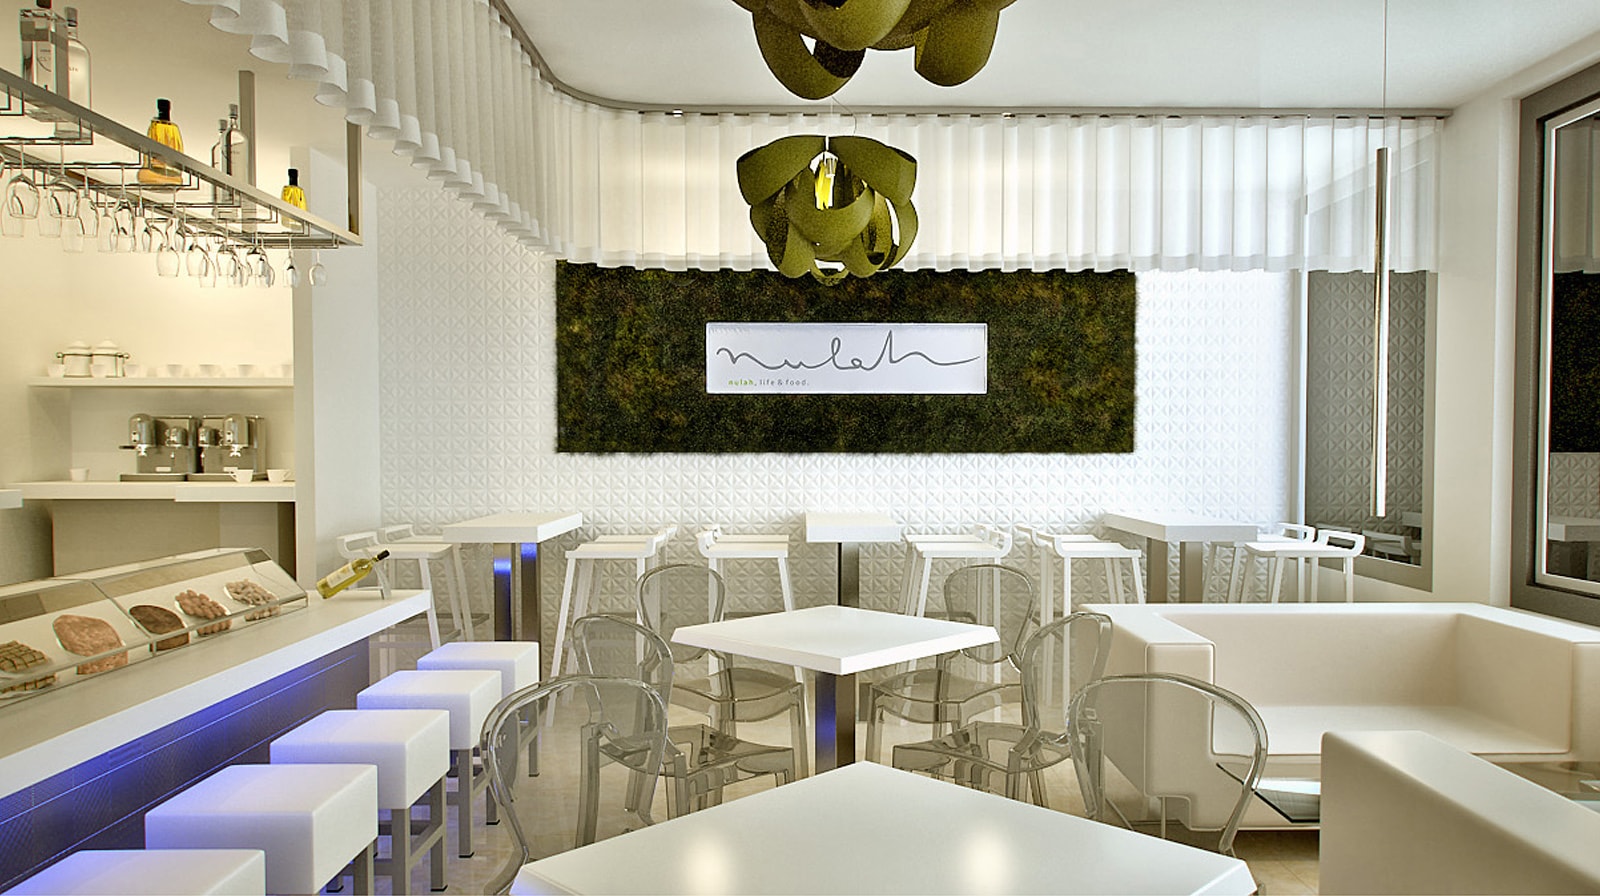 Mulah Cafe interior wall sign